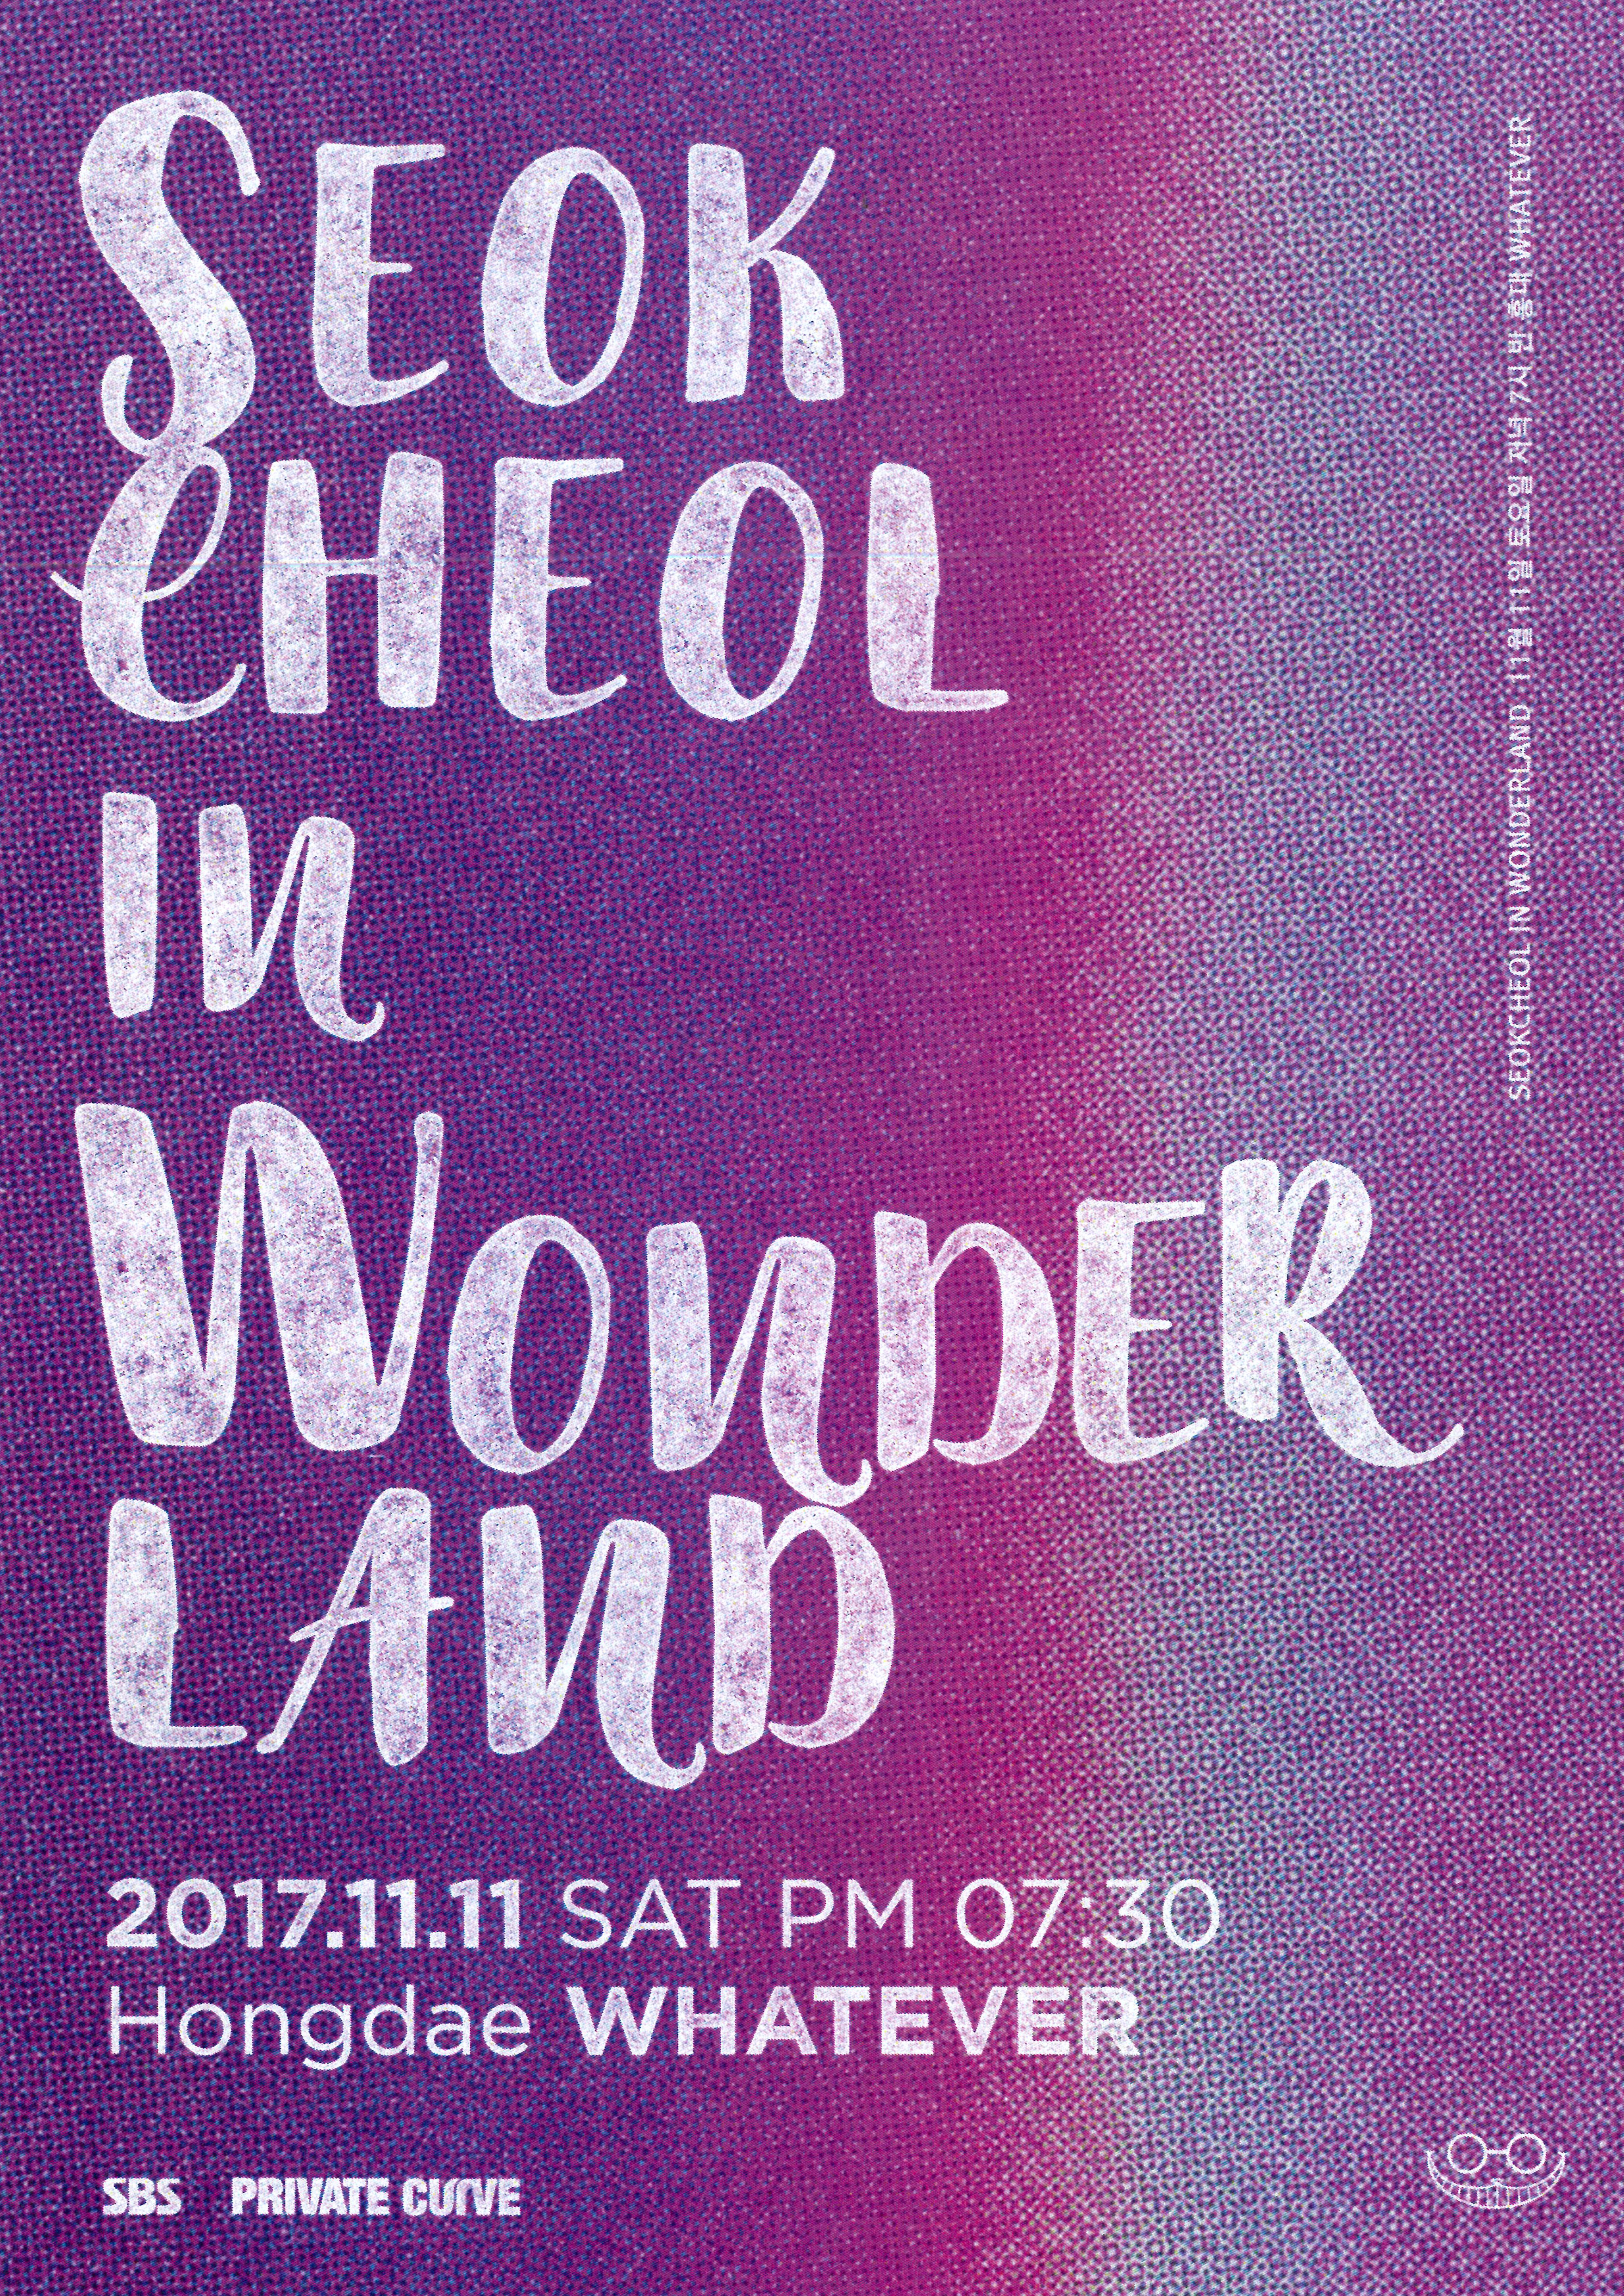 [공연안내] 윤석철 트리오 LIVE ‘Seokcheol In Wonderland'